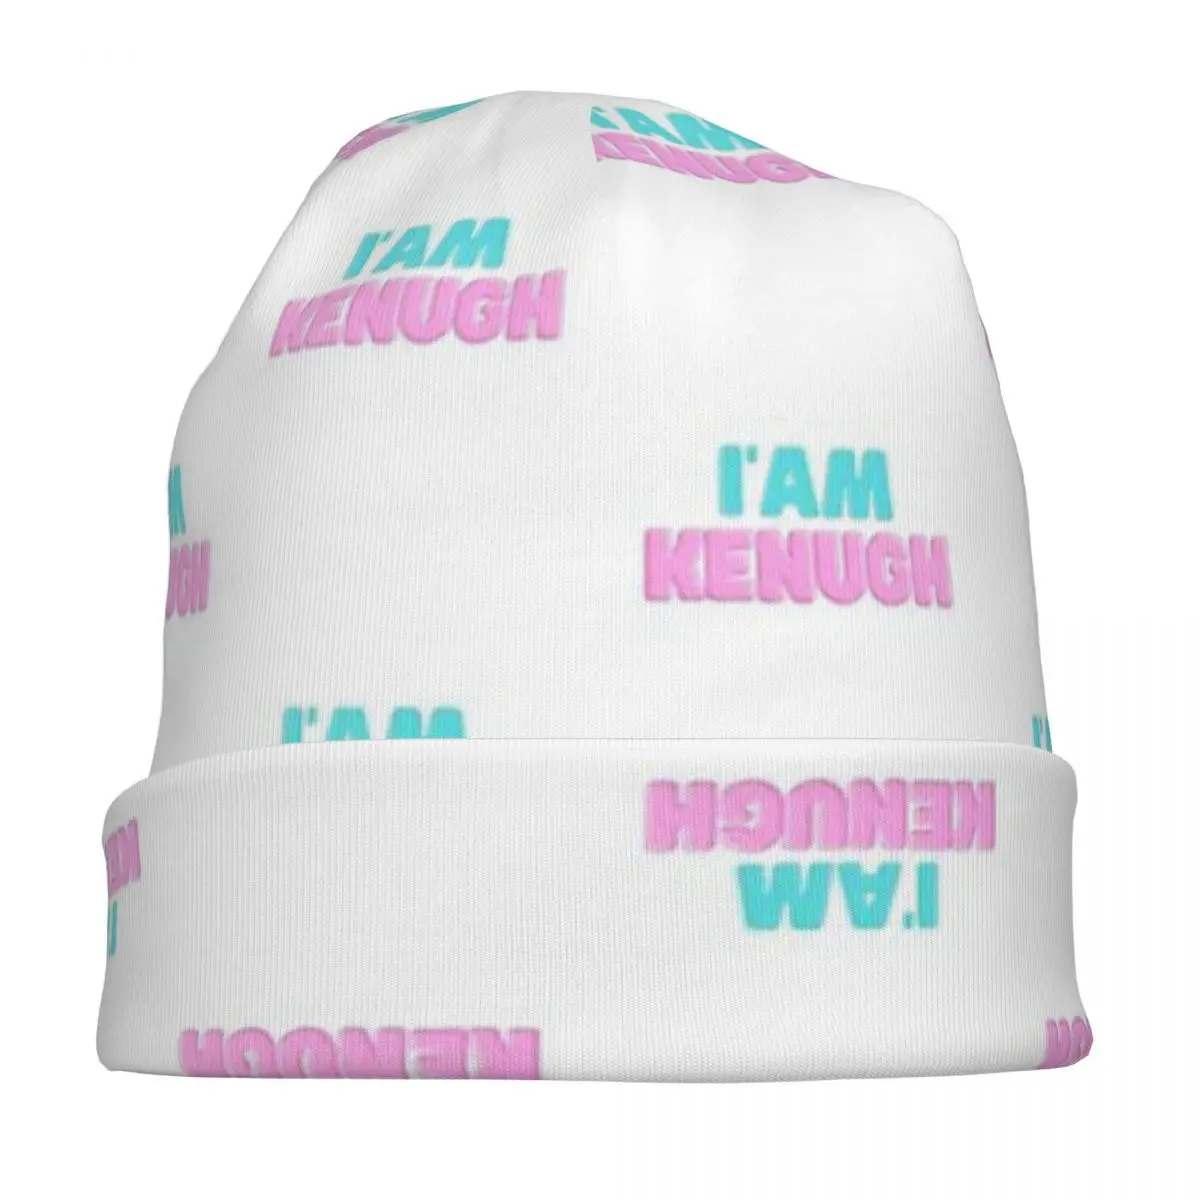 Ben Kenough 3 Unisex Kazak kap Kenergy bere erkekler ve kadınlar için açık hava şapkası